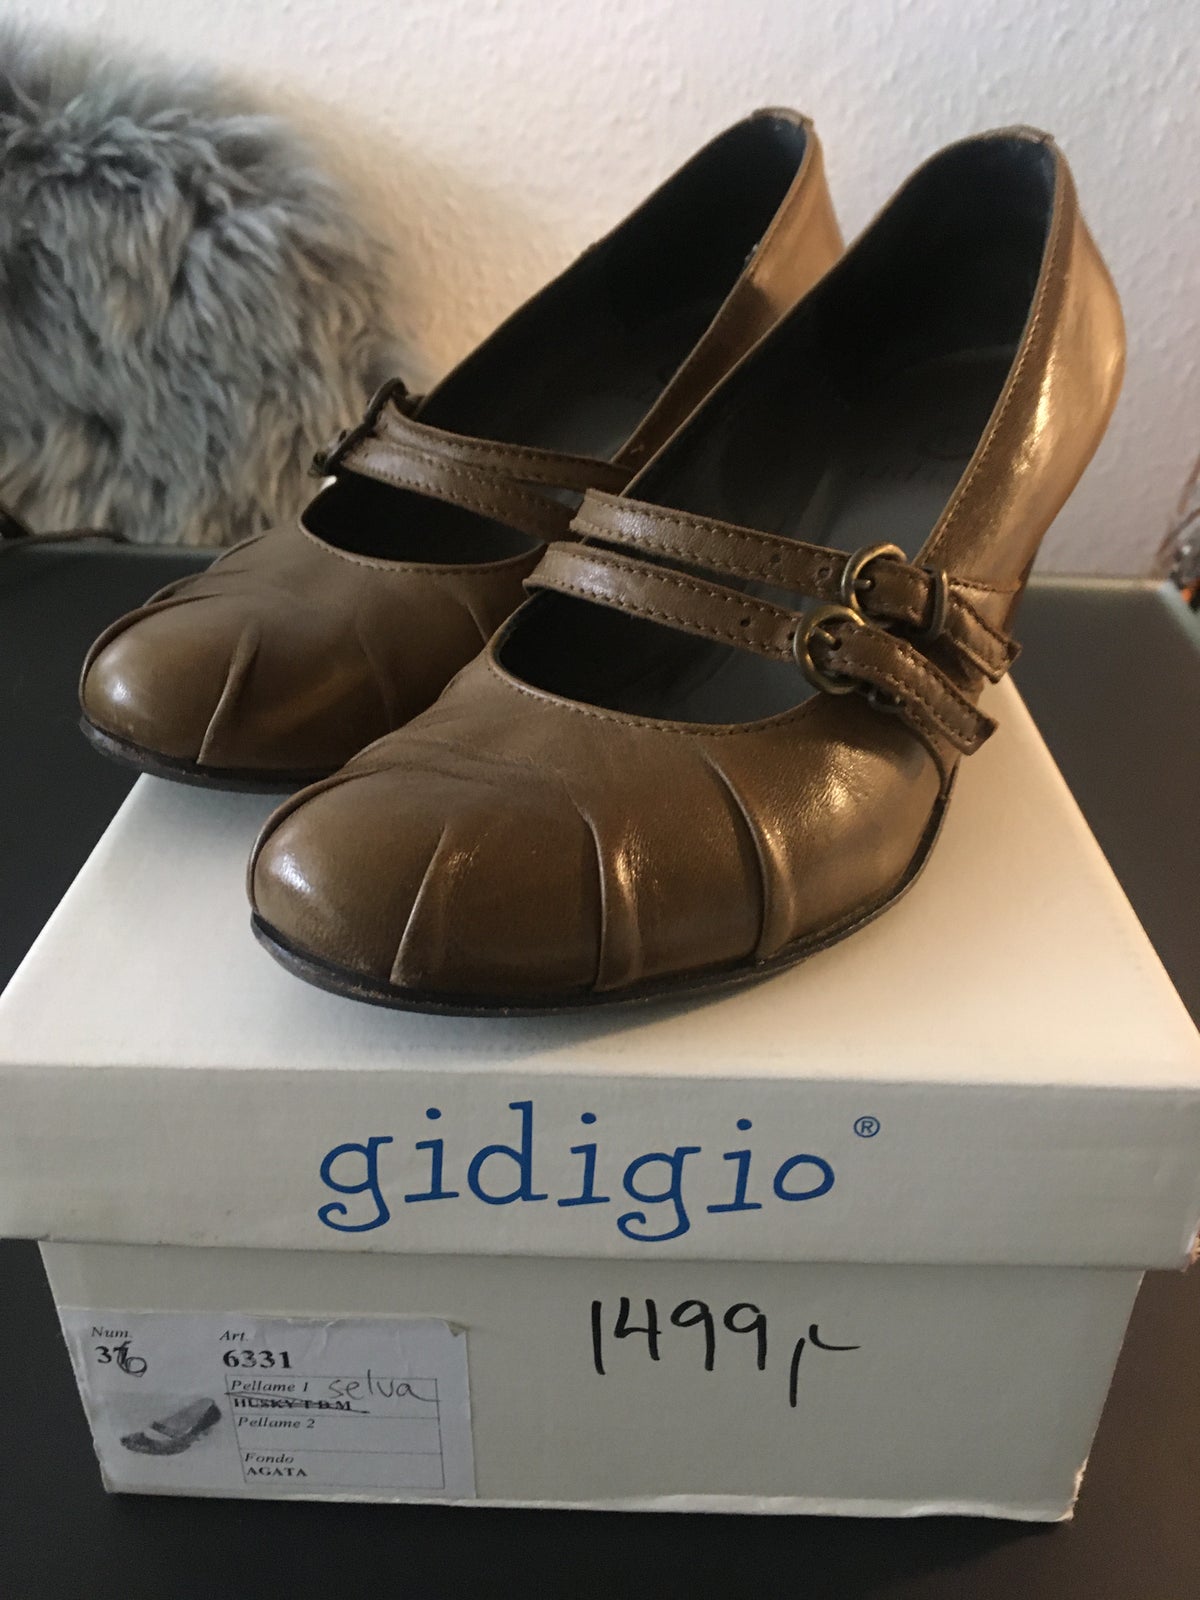 Pumps, str. 36, Gidigio - italienske sko - Nypris 1.499,- dba.dk – Køb og Salg af Nyt Brugt